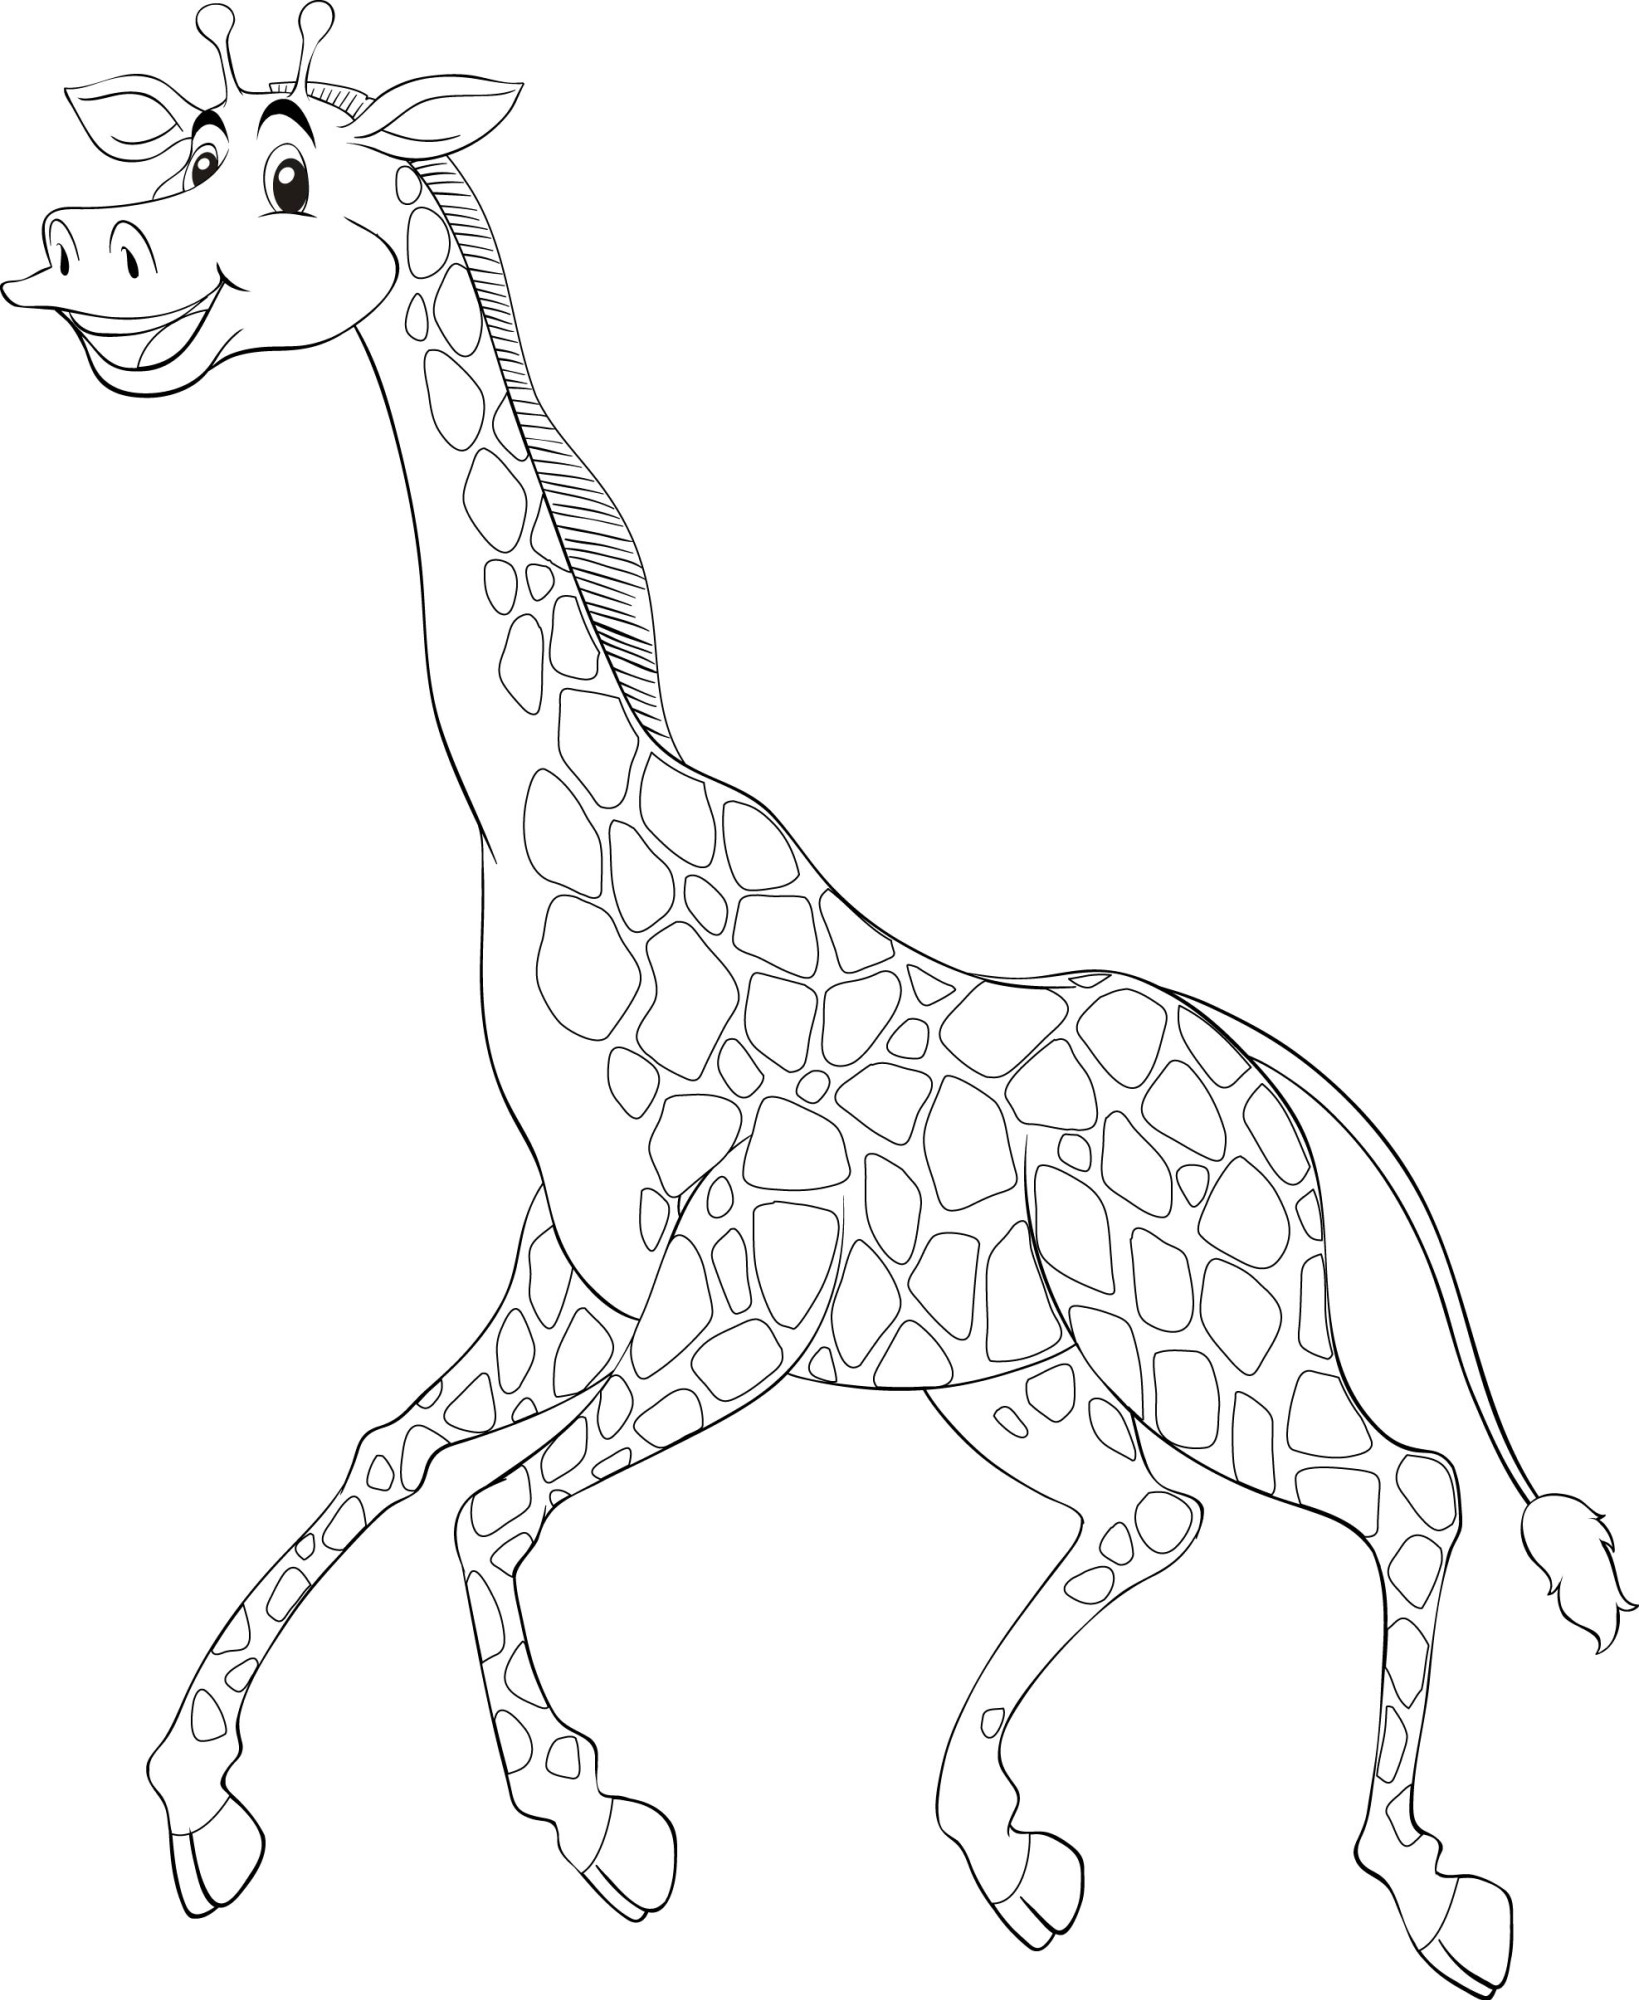 Раскраска для детей: бегущий жираф